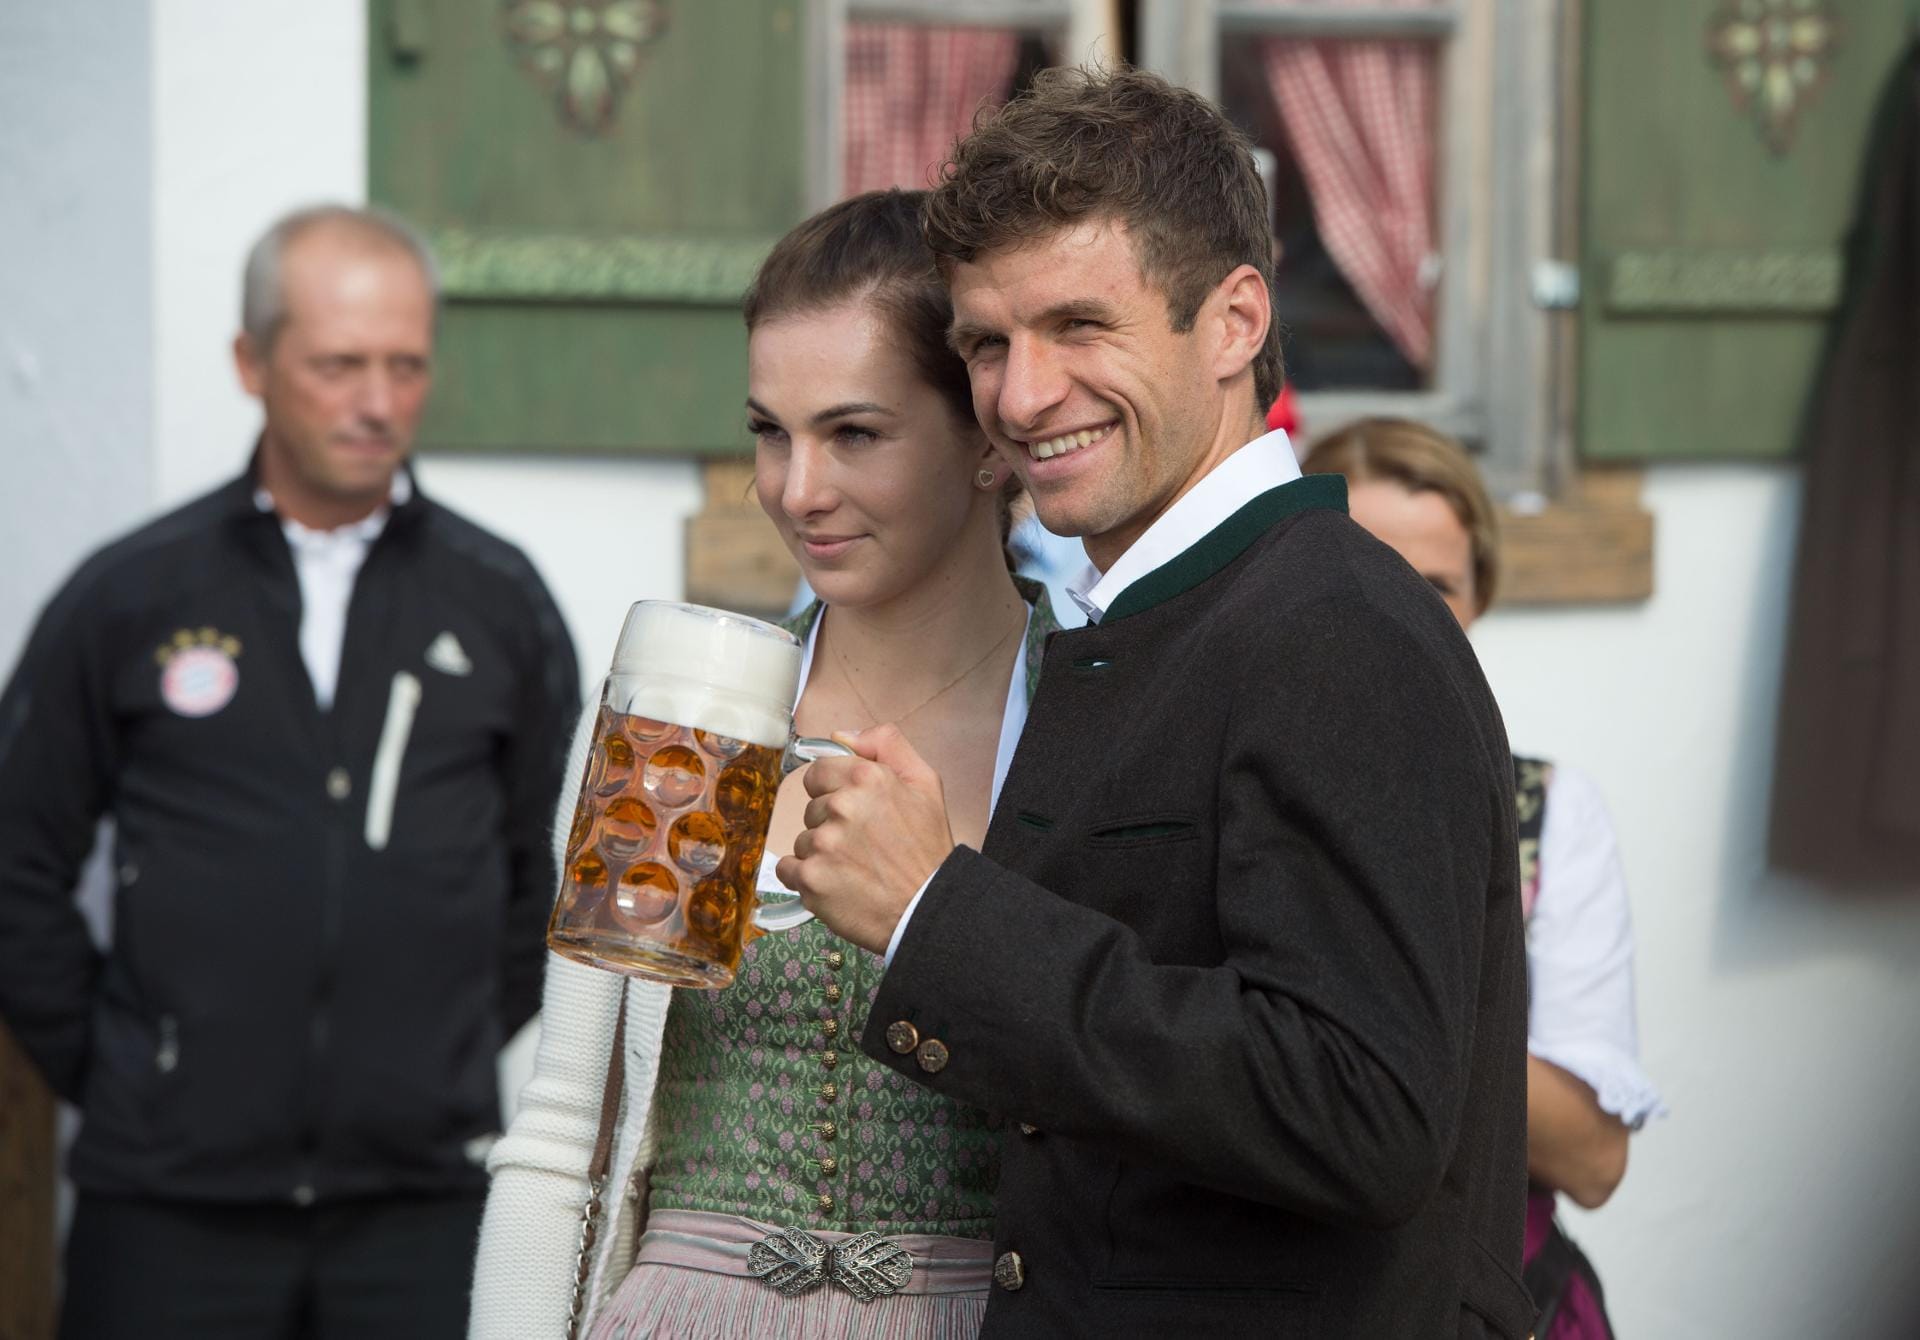 WM-Held Thomas Müller kam mit Ehefrau Lisa - und zeigte sich wie immer bestens gelaunt.